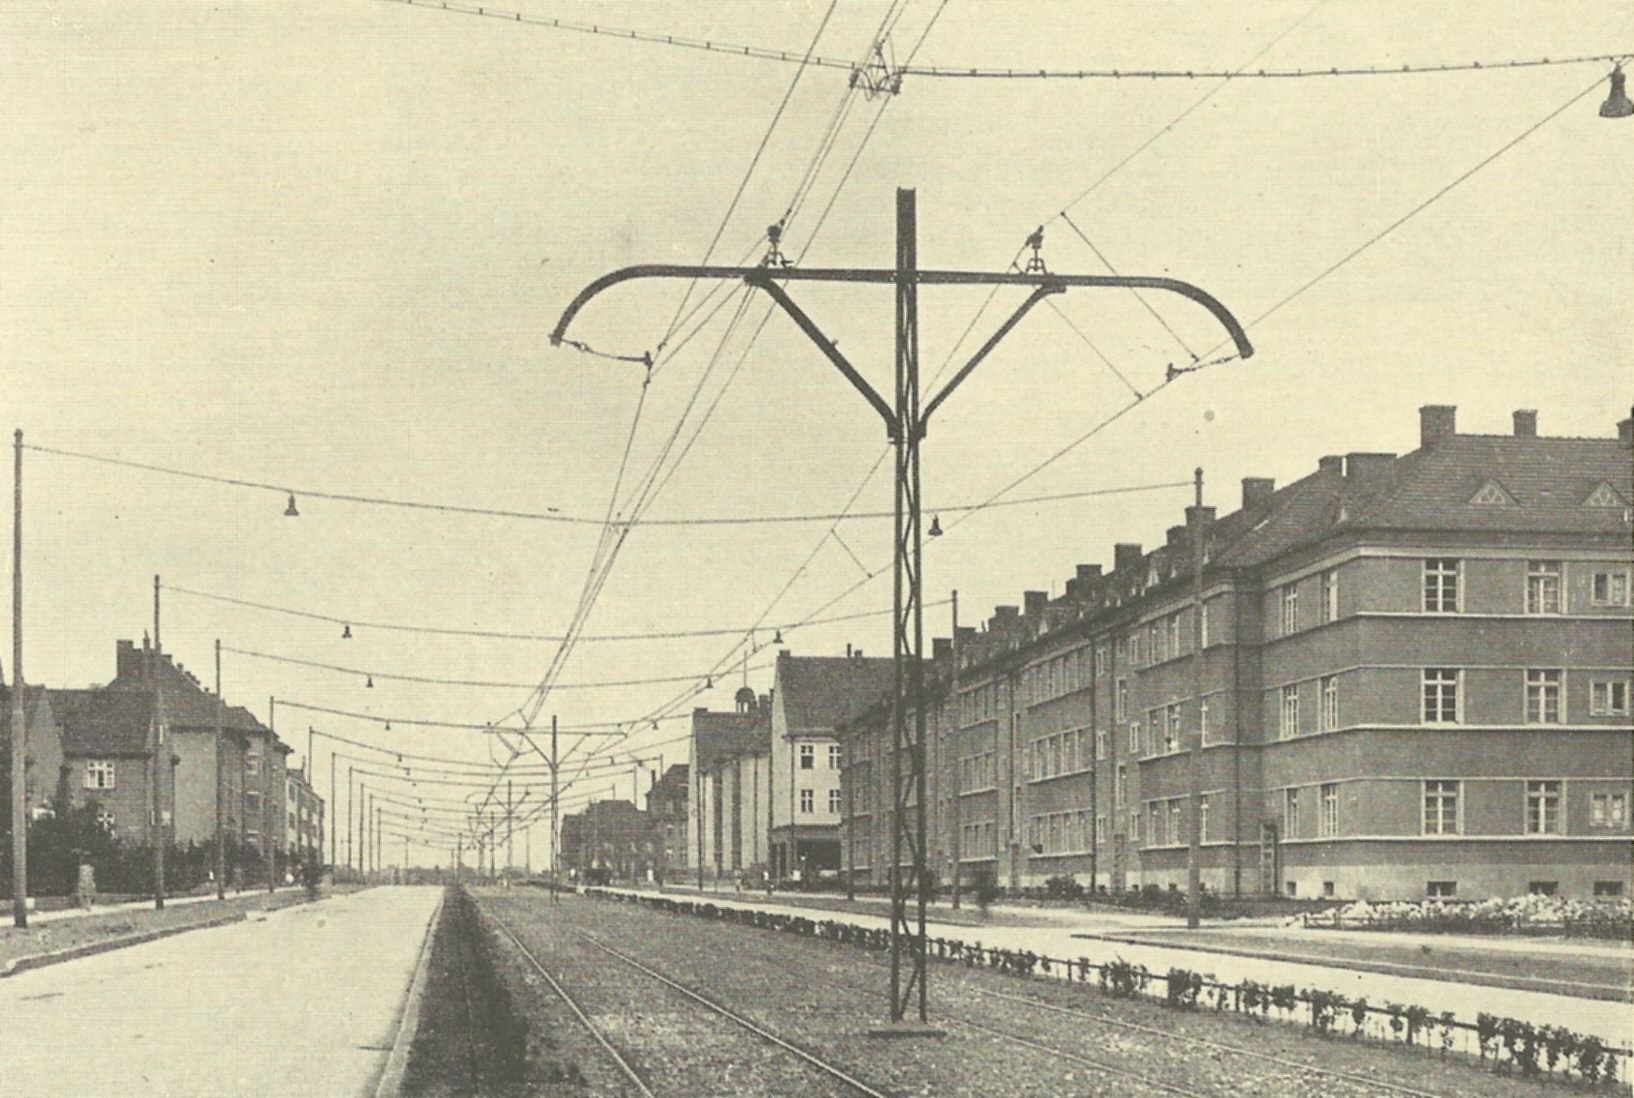 zdjęcie z książki - 50 Jahre Stettiner Strassenbahn 1879-1929